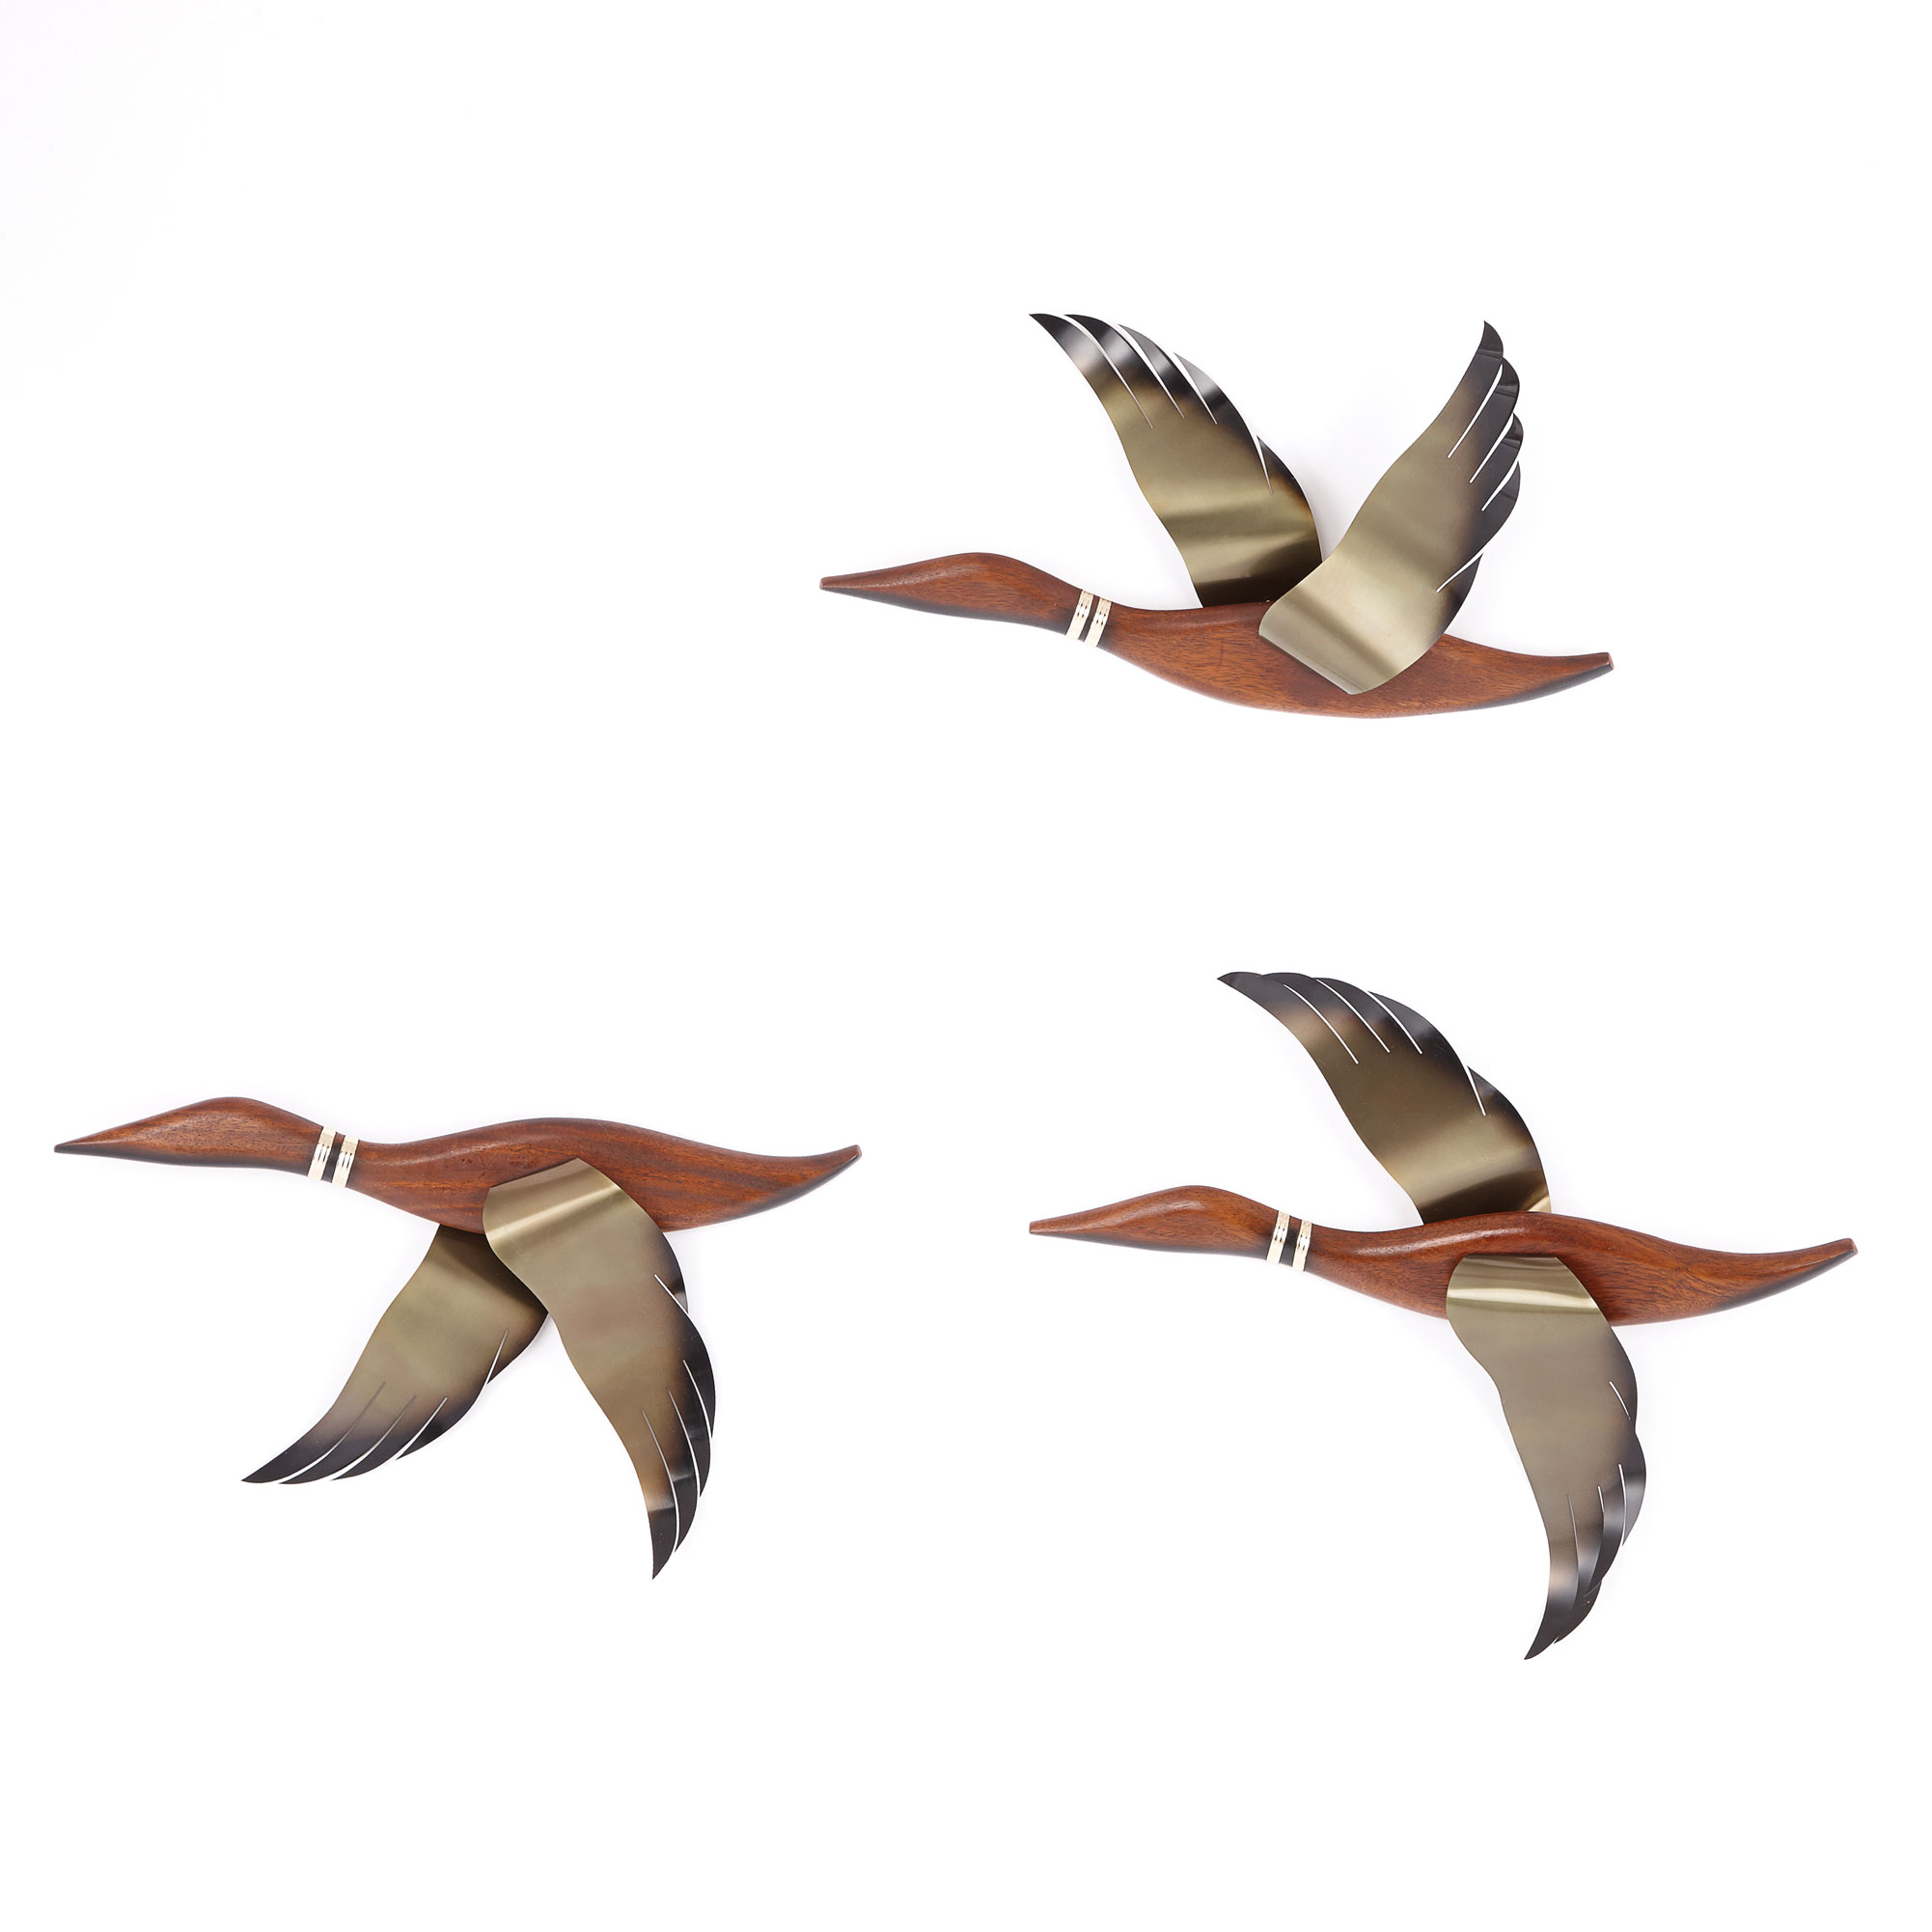 A Set of Three Vintage Maskateer Flying Geese - Webb's | Find Lots ...